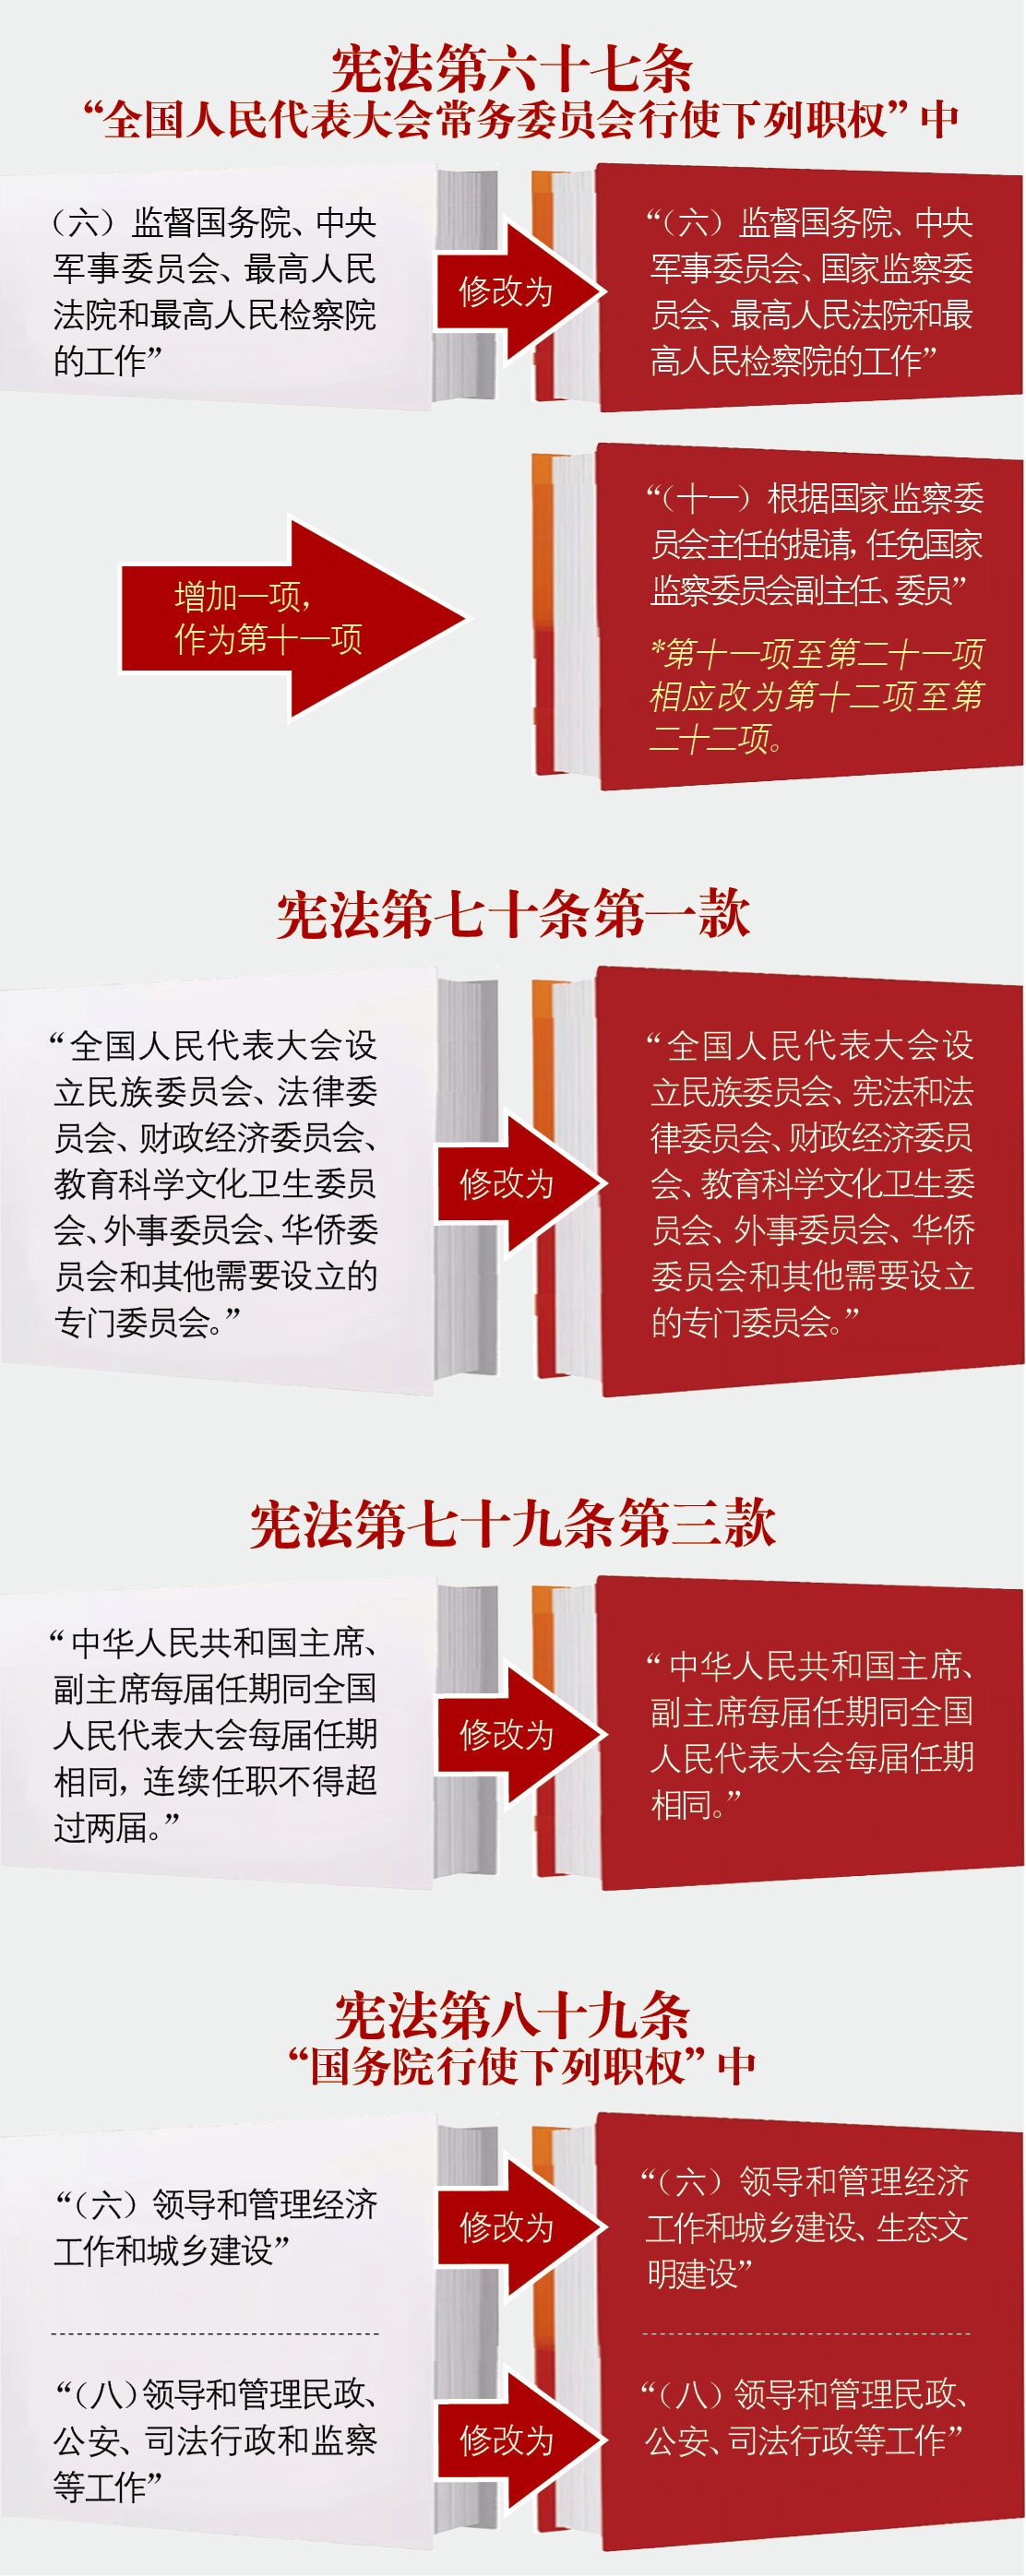 一图看懂《中华人民共和国宪法修正案》